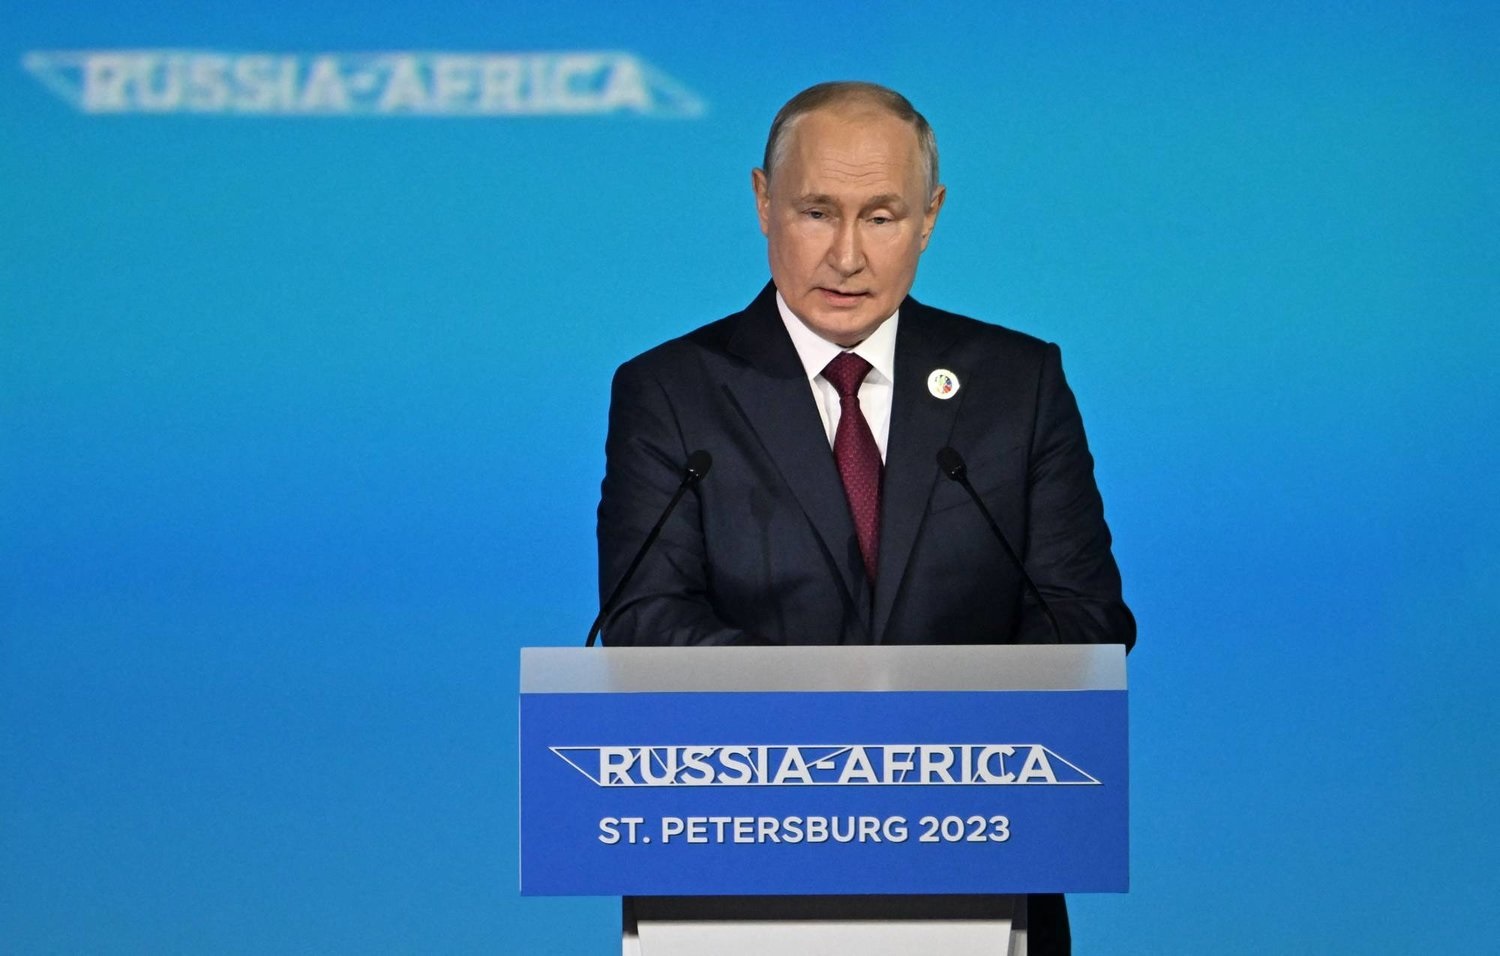 قمة روسيا-إفريقيا الثانية: تعزيز التعاون التجاري والغذائي بين الجانبين